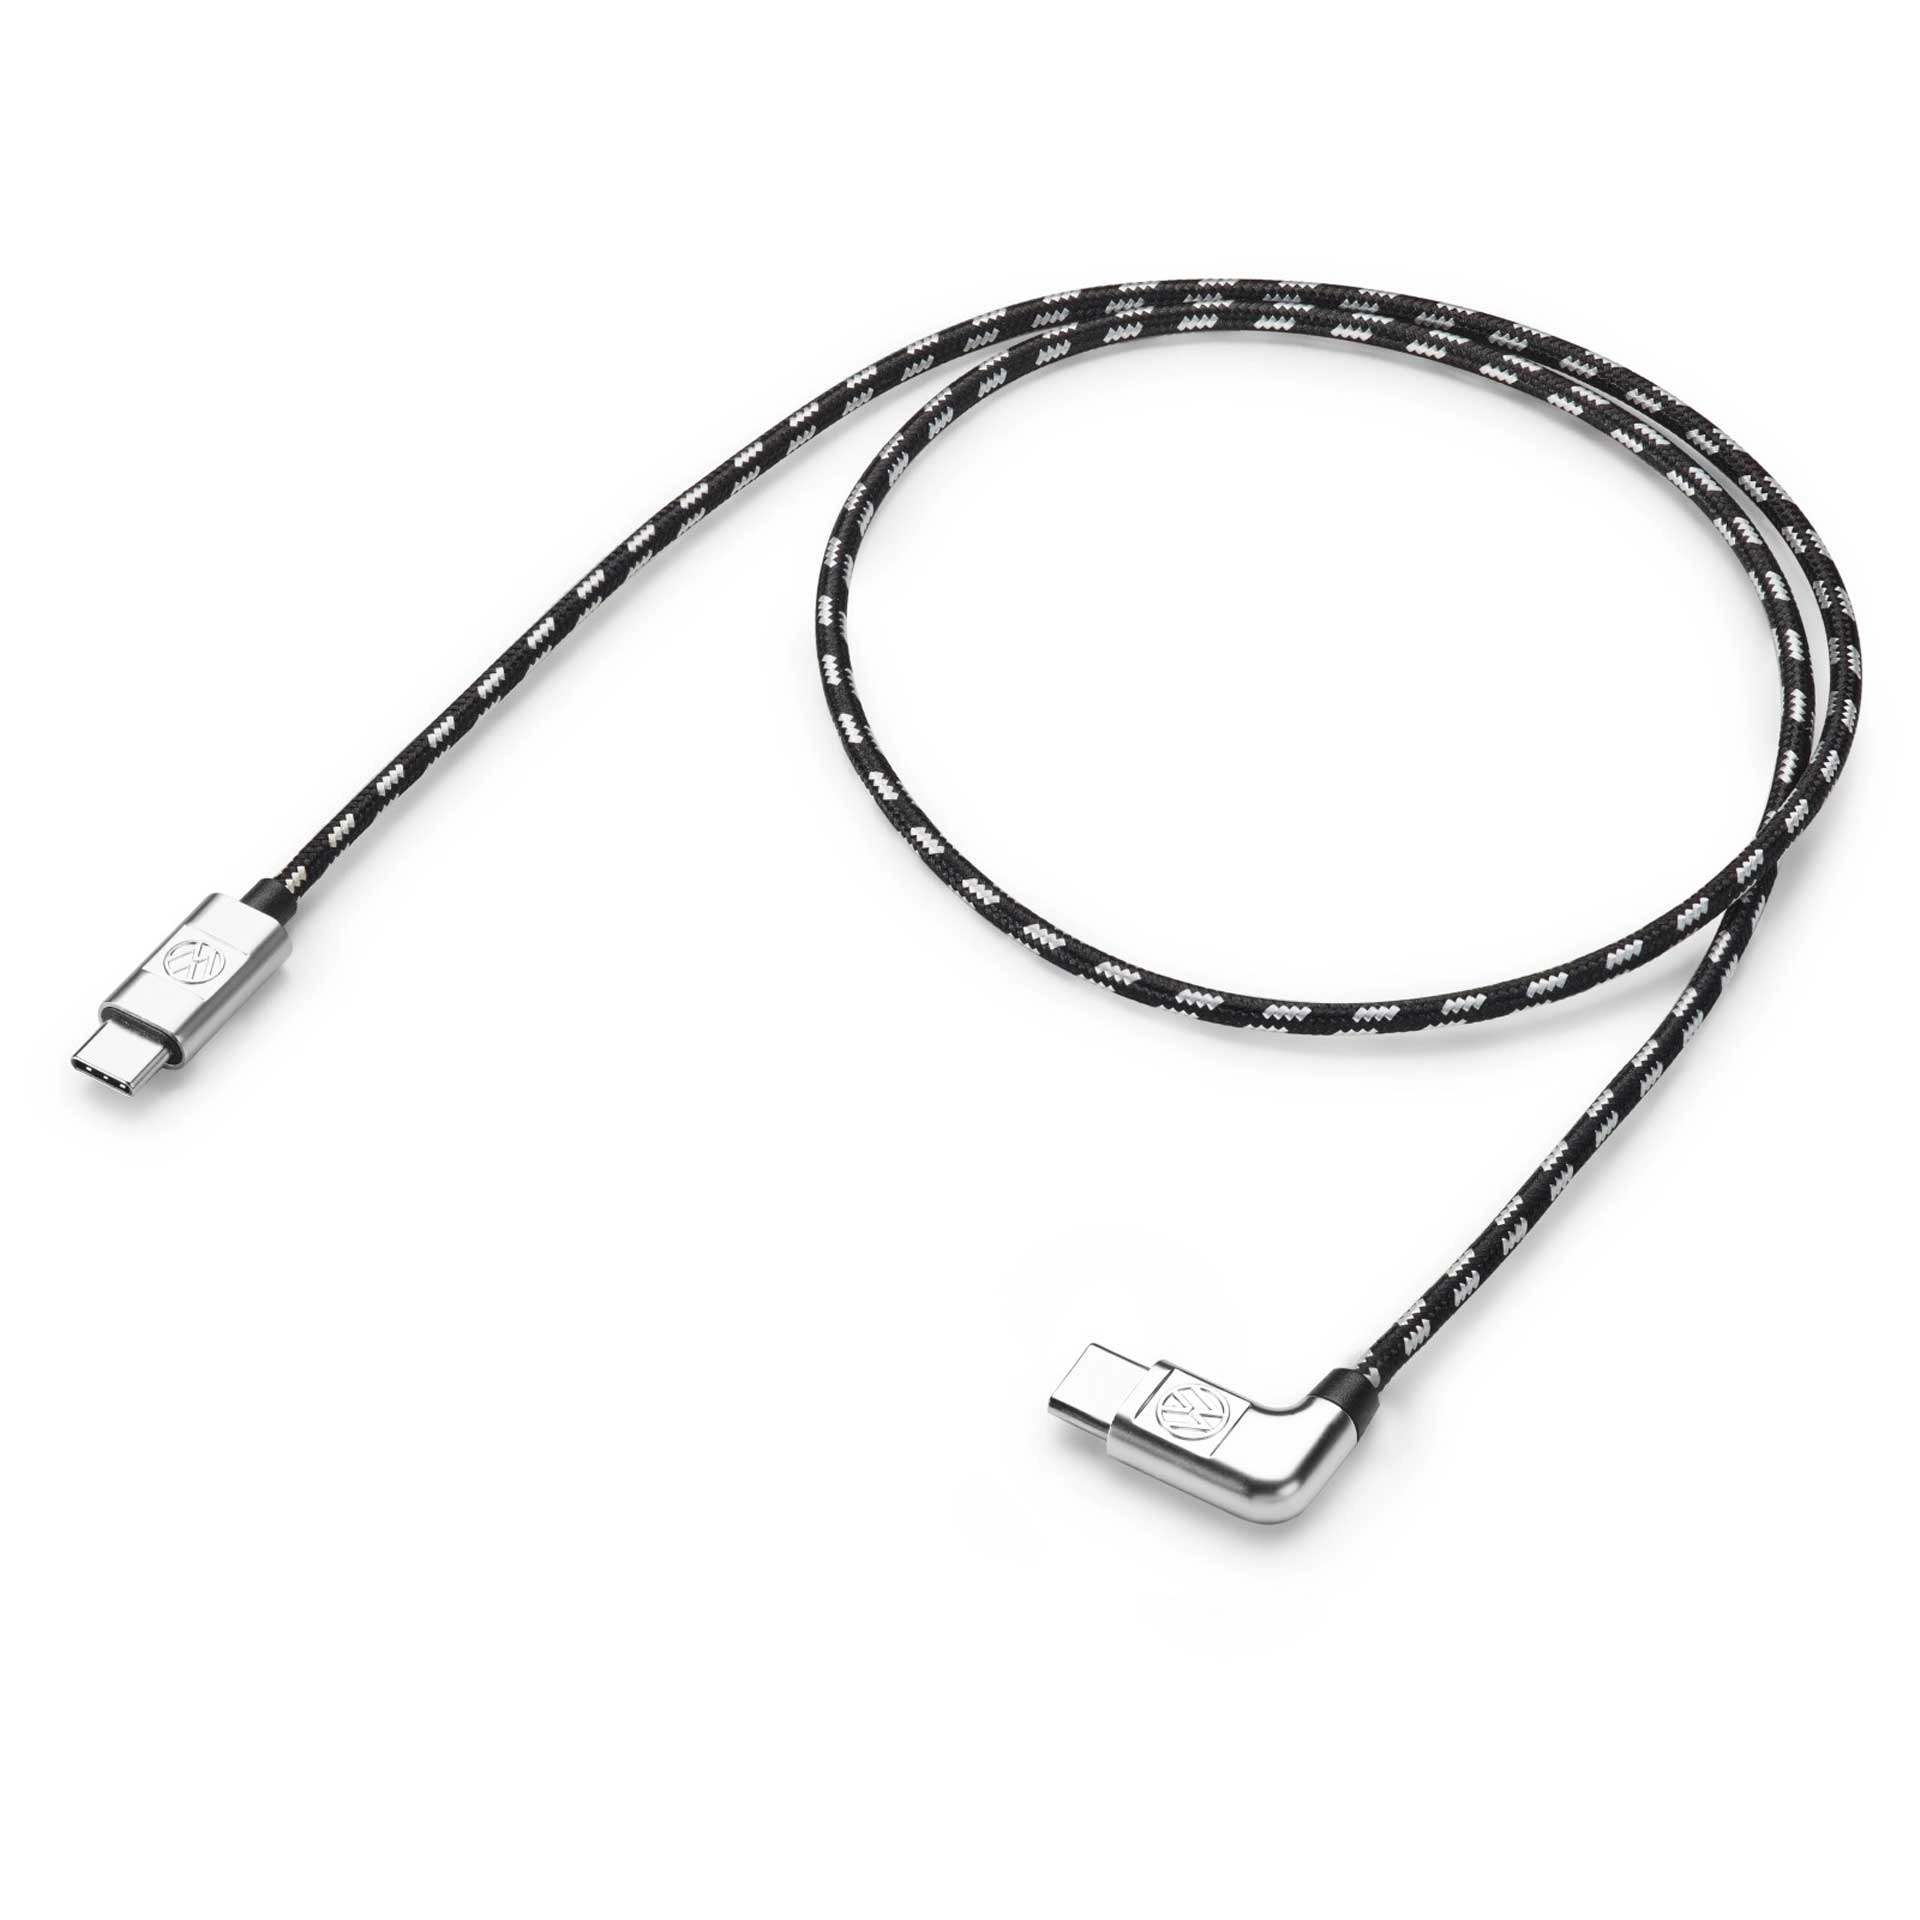 Volkswagen Anschlusskabel Ladekabel USB-C auf USB-C 70 cm 000051446BC